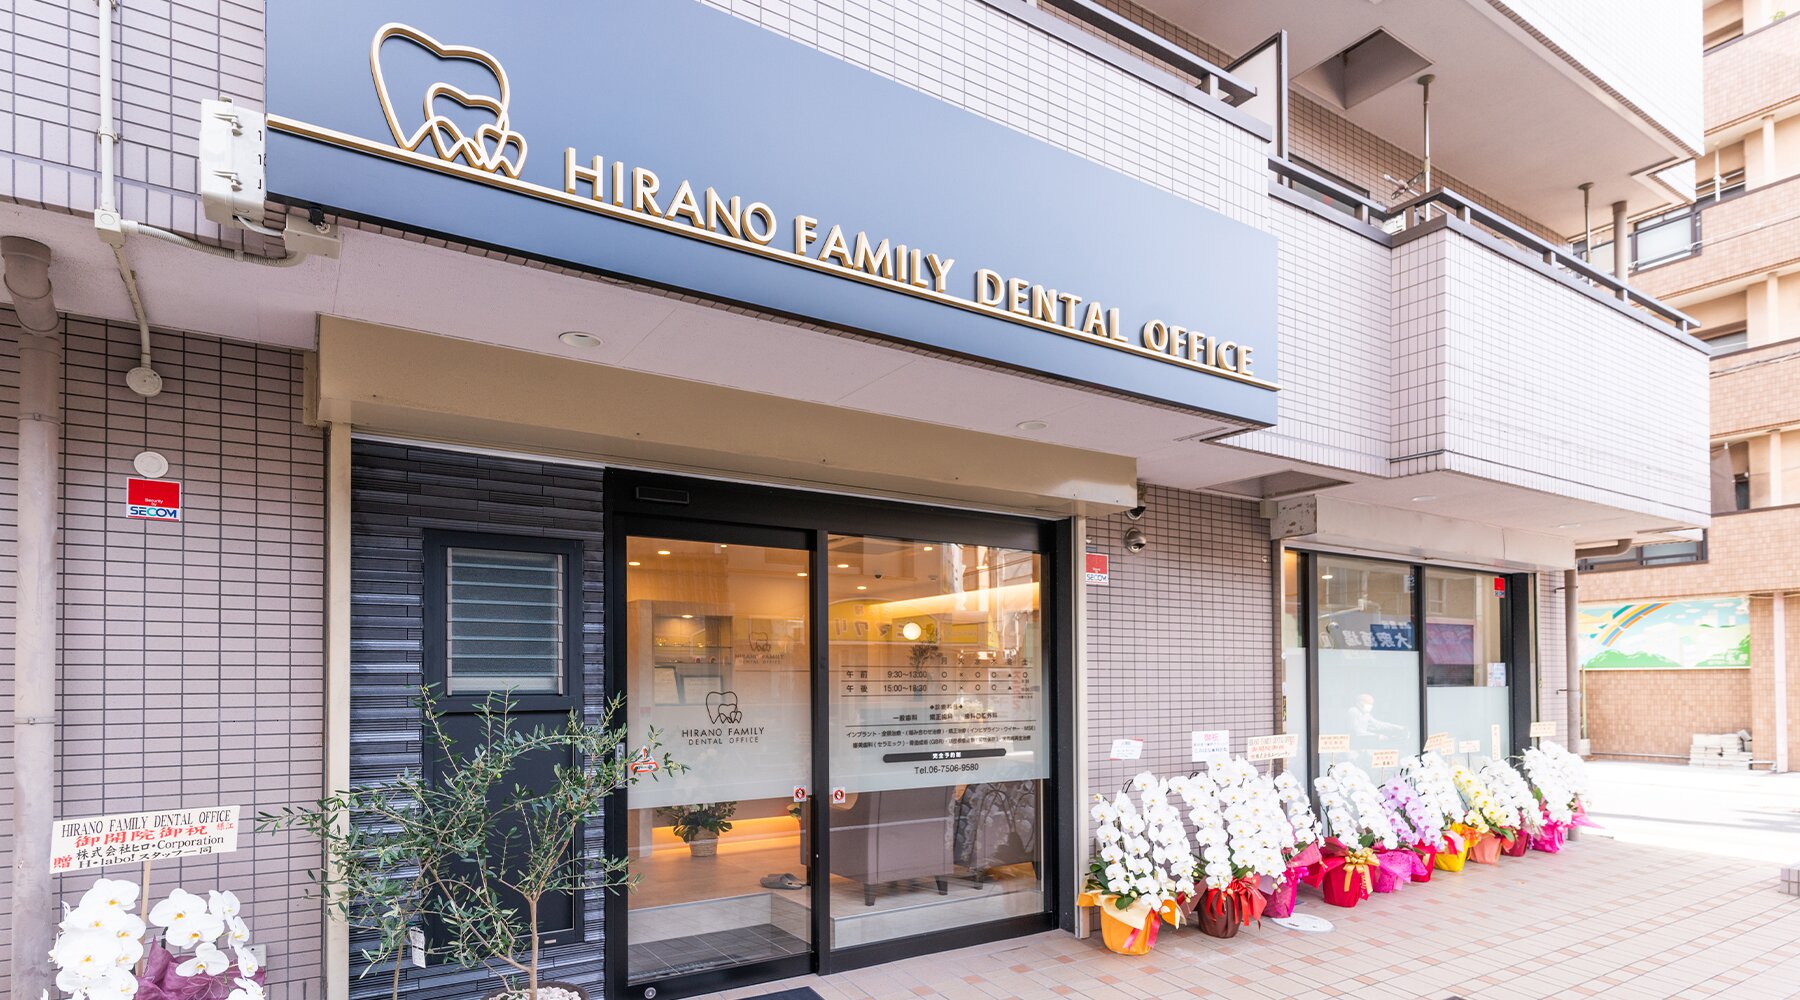 HIRANO FAMILY DENTAL OFFICE